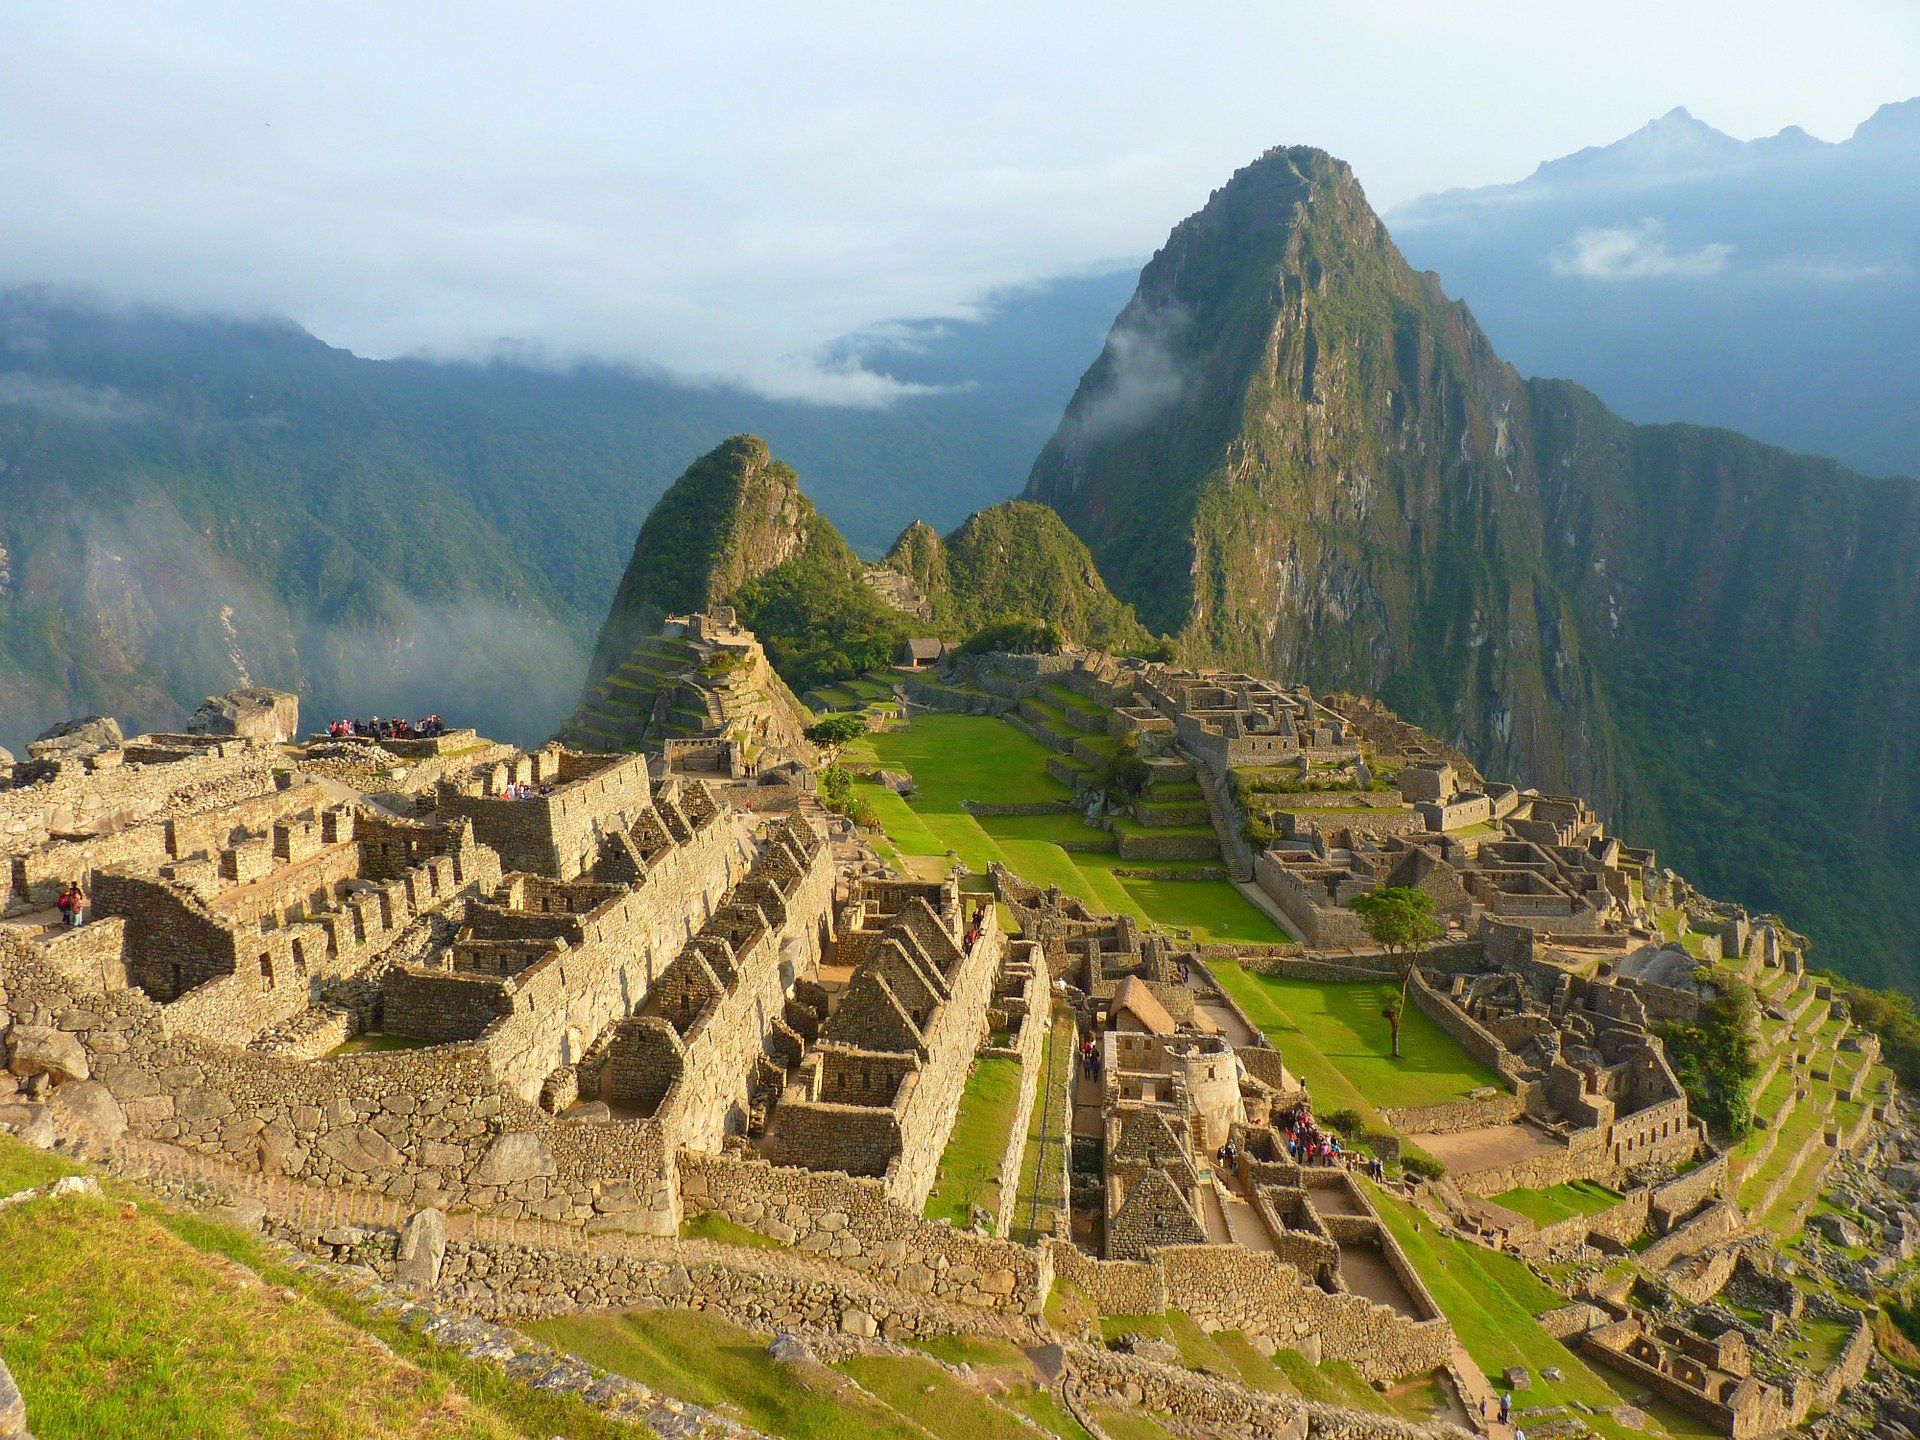 Machu Picchu empty for anniversary as Peru virus cases soar